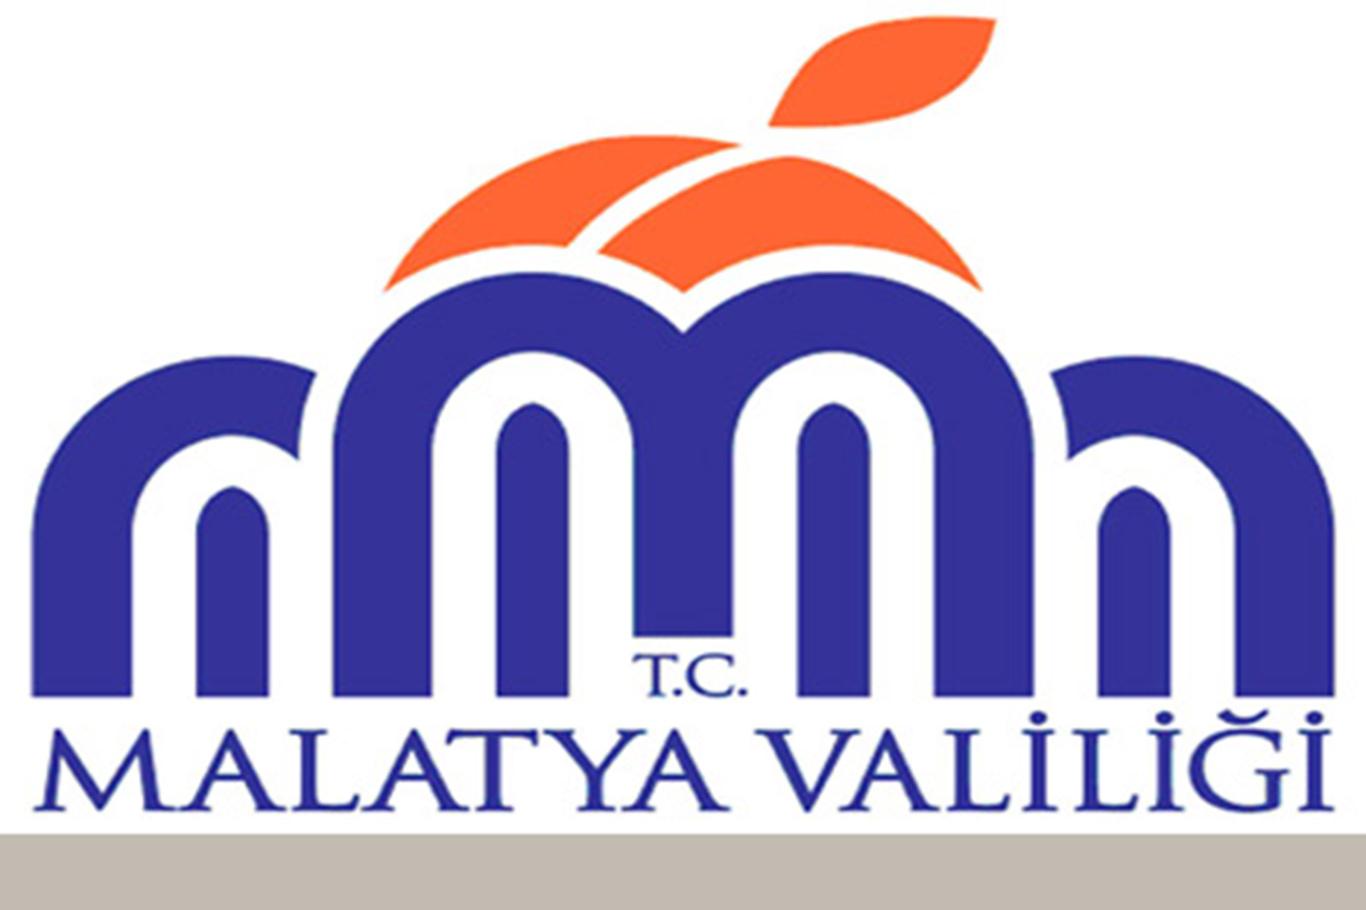 Malatya'da karantinaya alınan mahalle sayısı 6’ya yükseldi